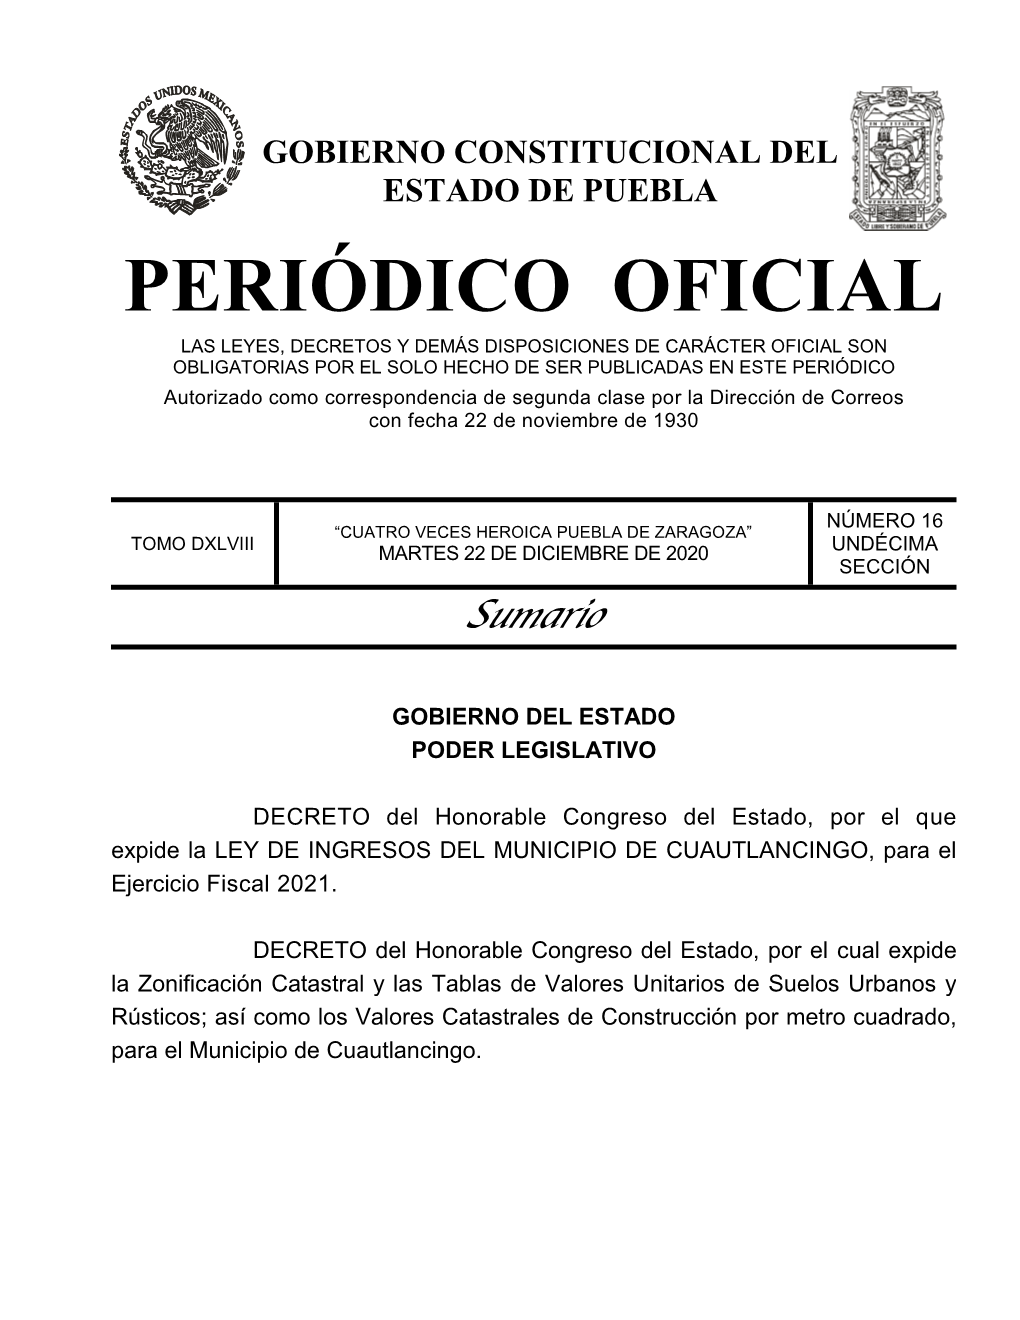 LEY DE INGRESOS DEL MUNICIPIO DE CUAUTLANCINGO, Para El Ejercicio Fiscal 2021